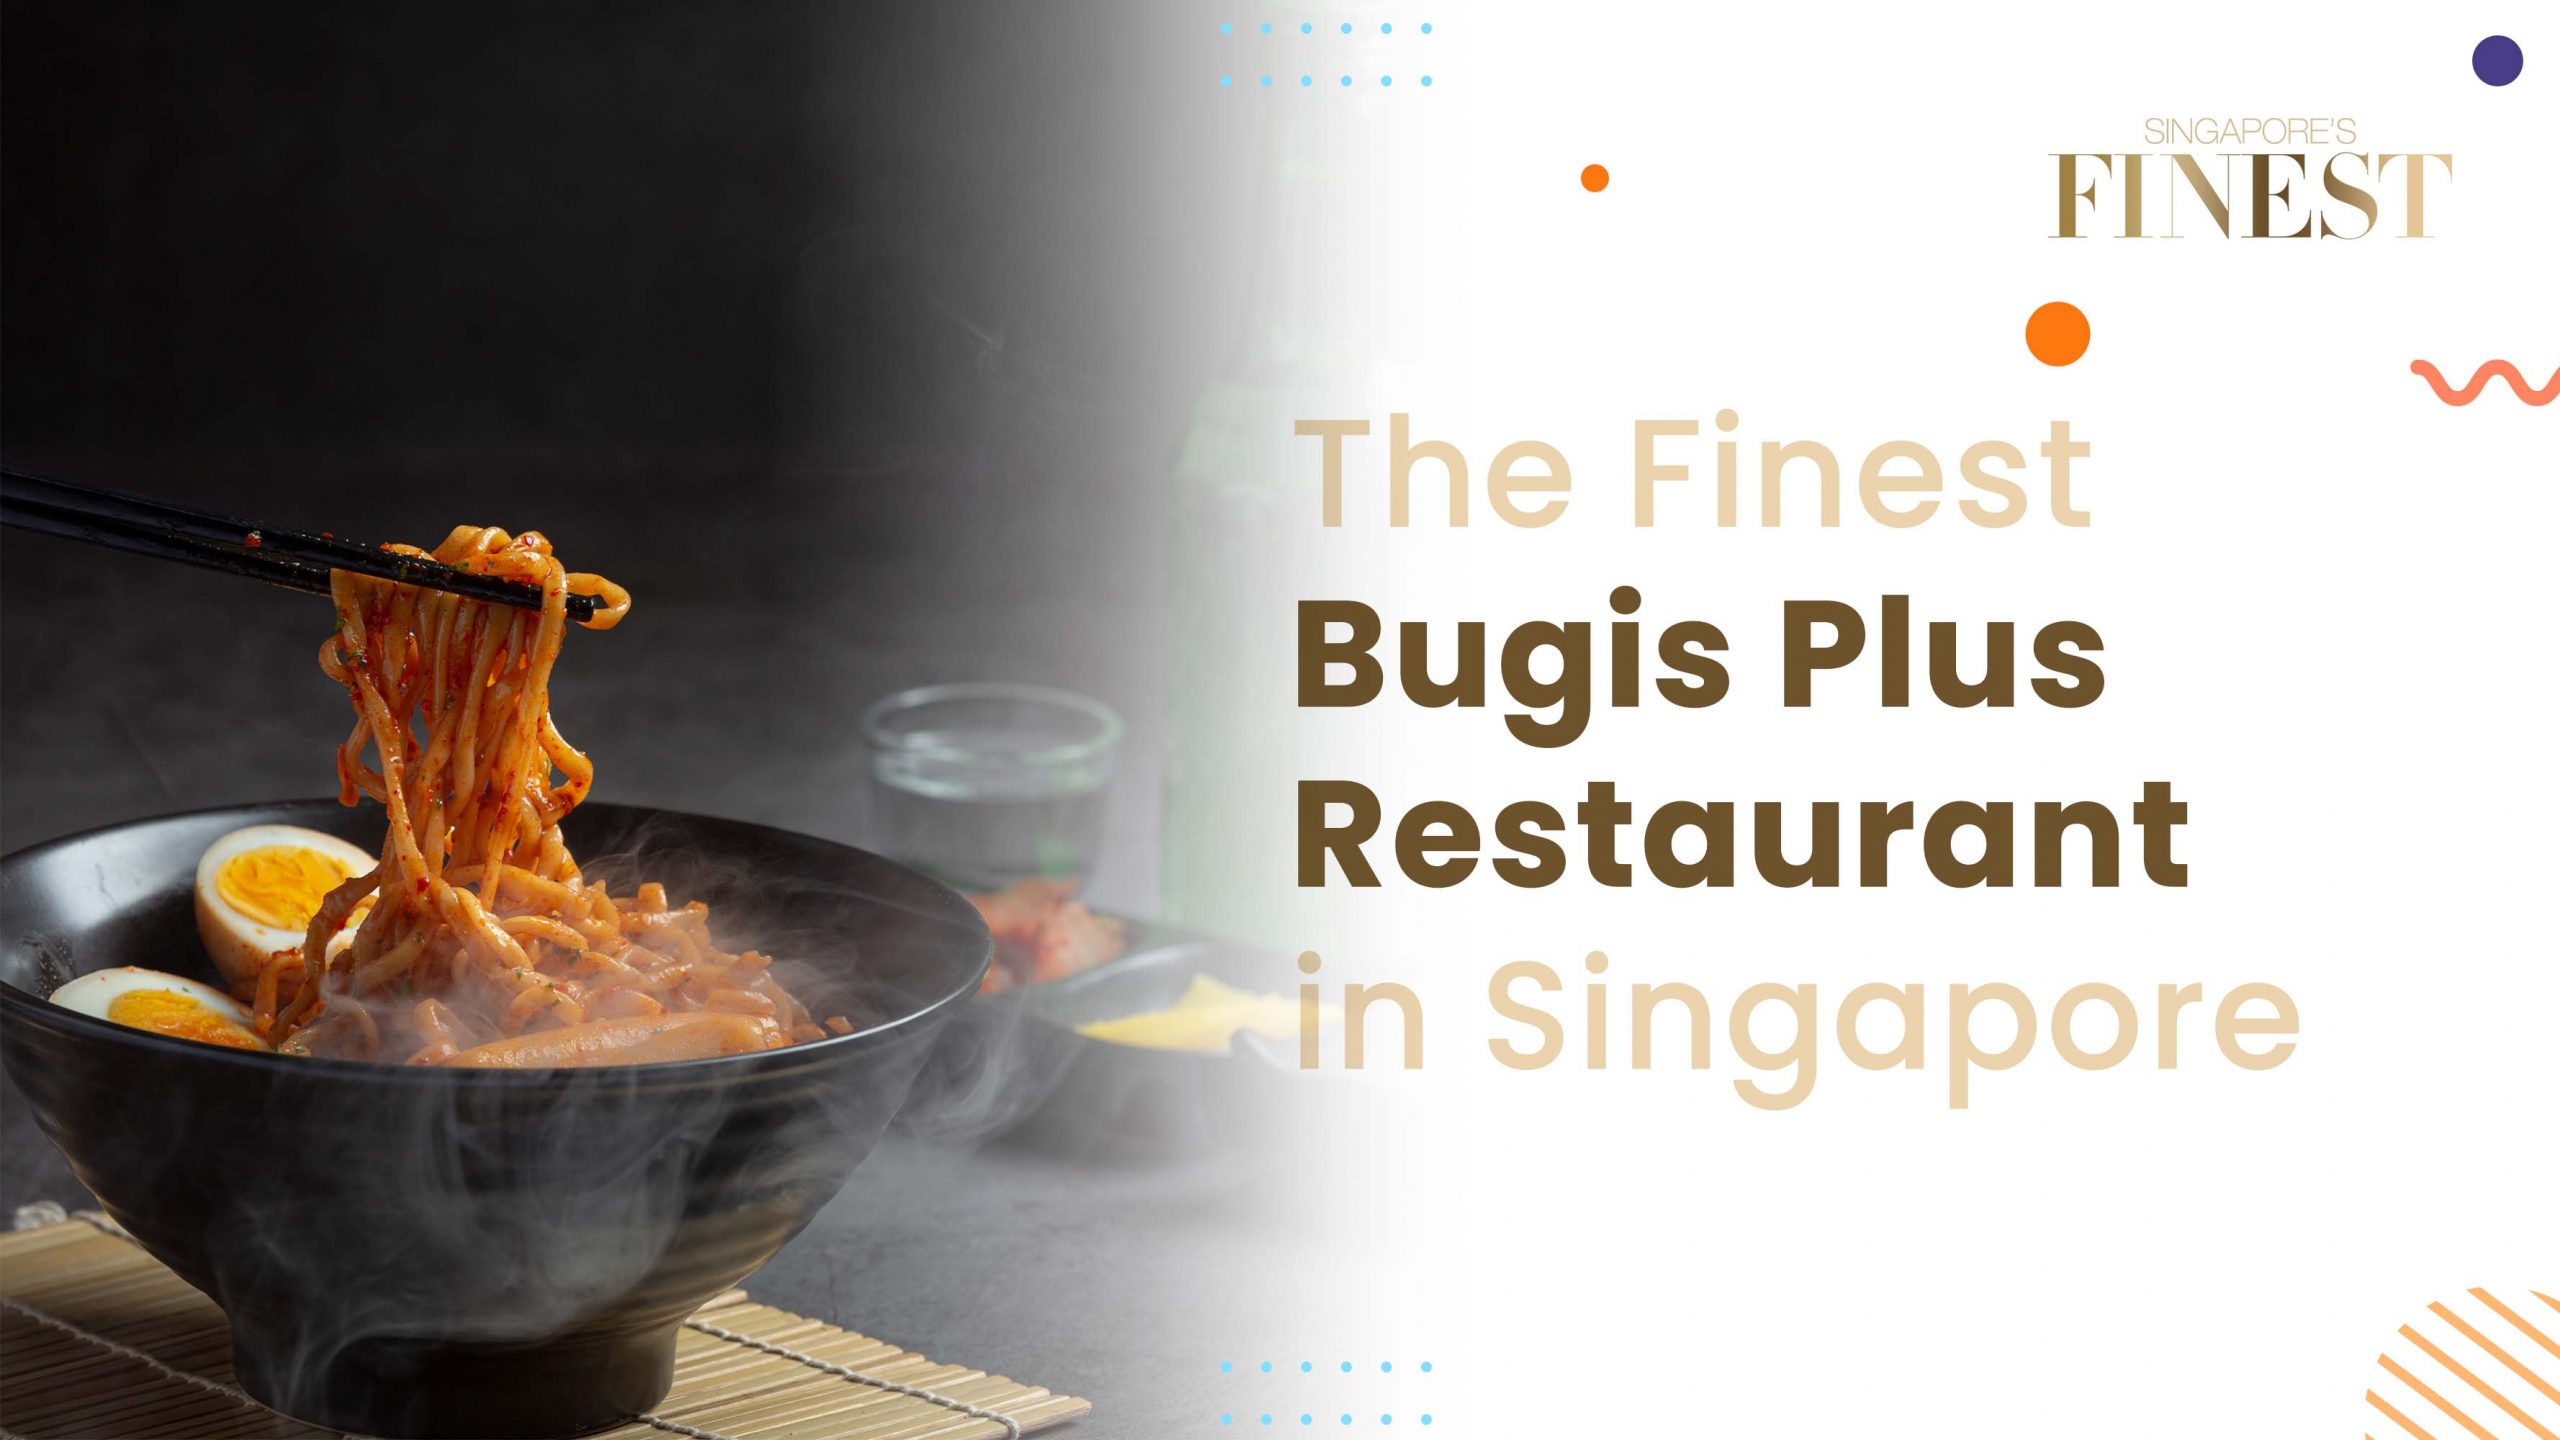 Finest Bugis Plus Restaurant in Singapore